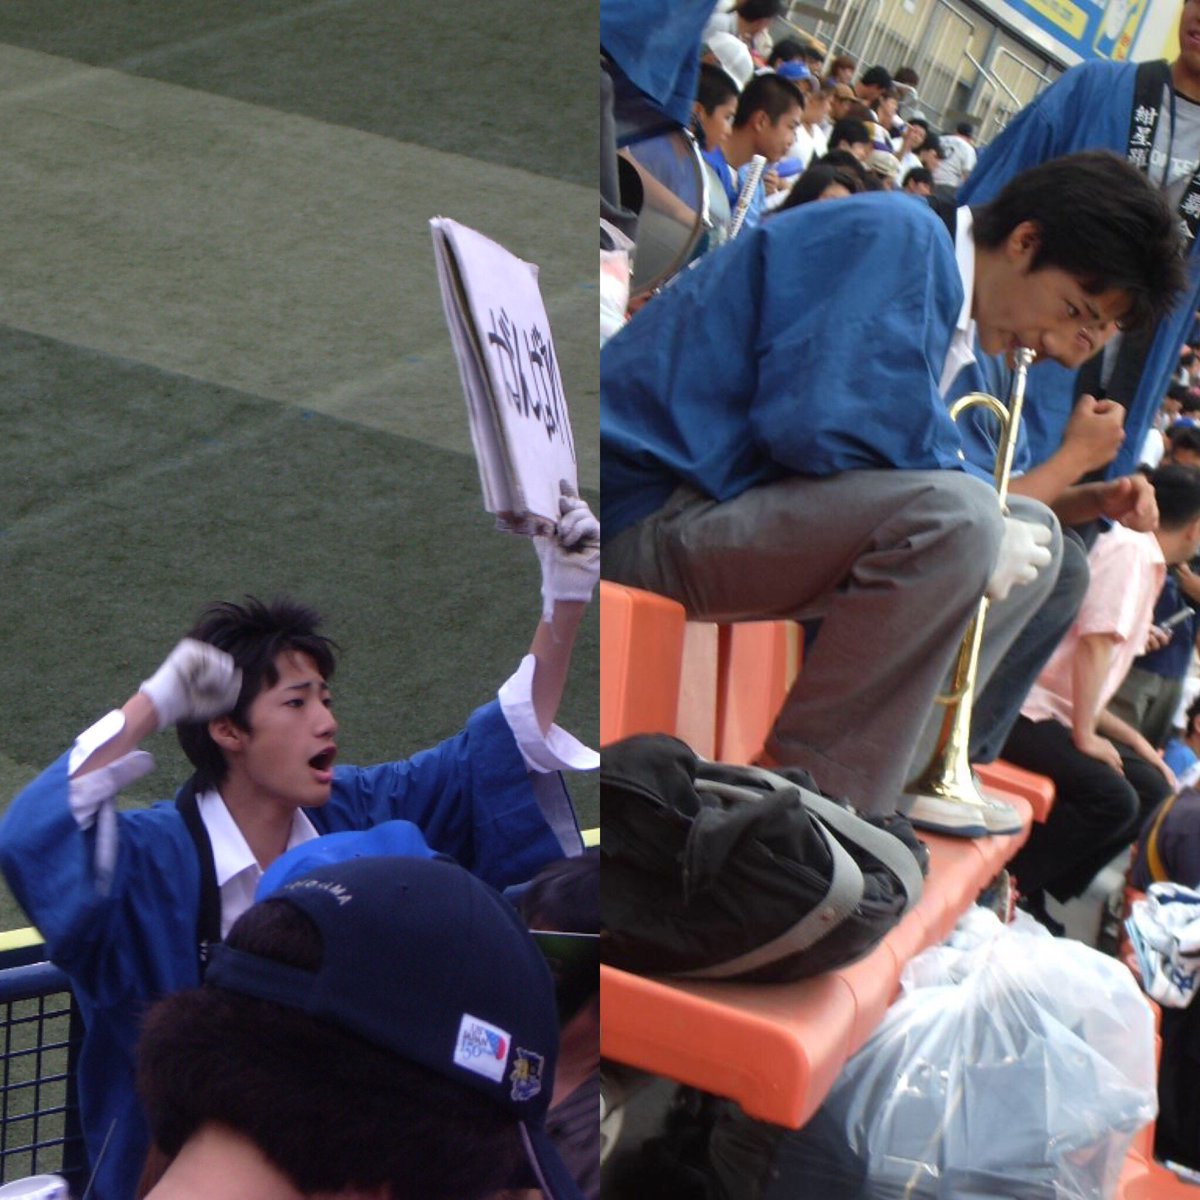 Kei Hotoda Pa Twitter 10年前 ベイスターズの試合 初めて外野席に座った時の写真です 応援団 がかっこよすぎて感動しました この方 特にかっこいいと思いました 今日は彼もバンザイバンザイって喜んでますかな 元気でいると願っています 横浜 ベイスターズ